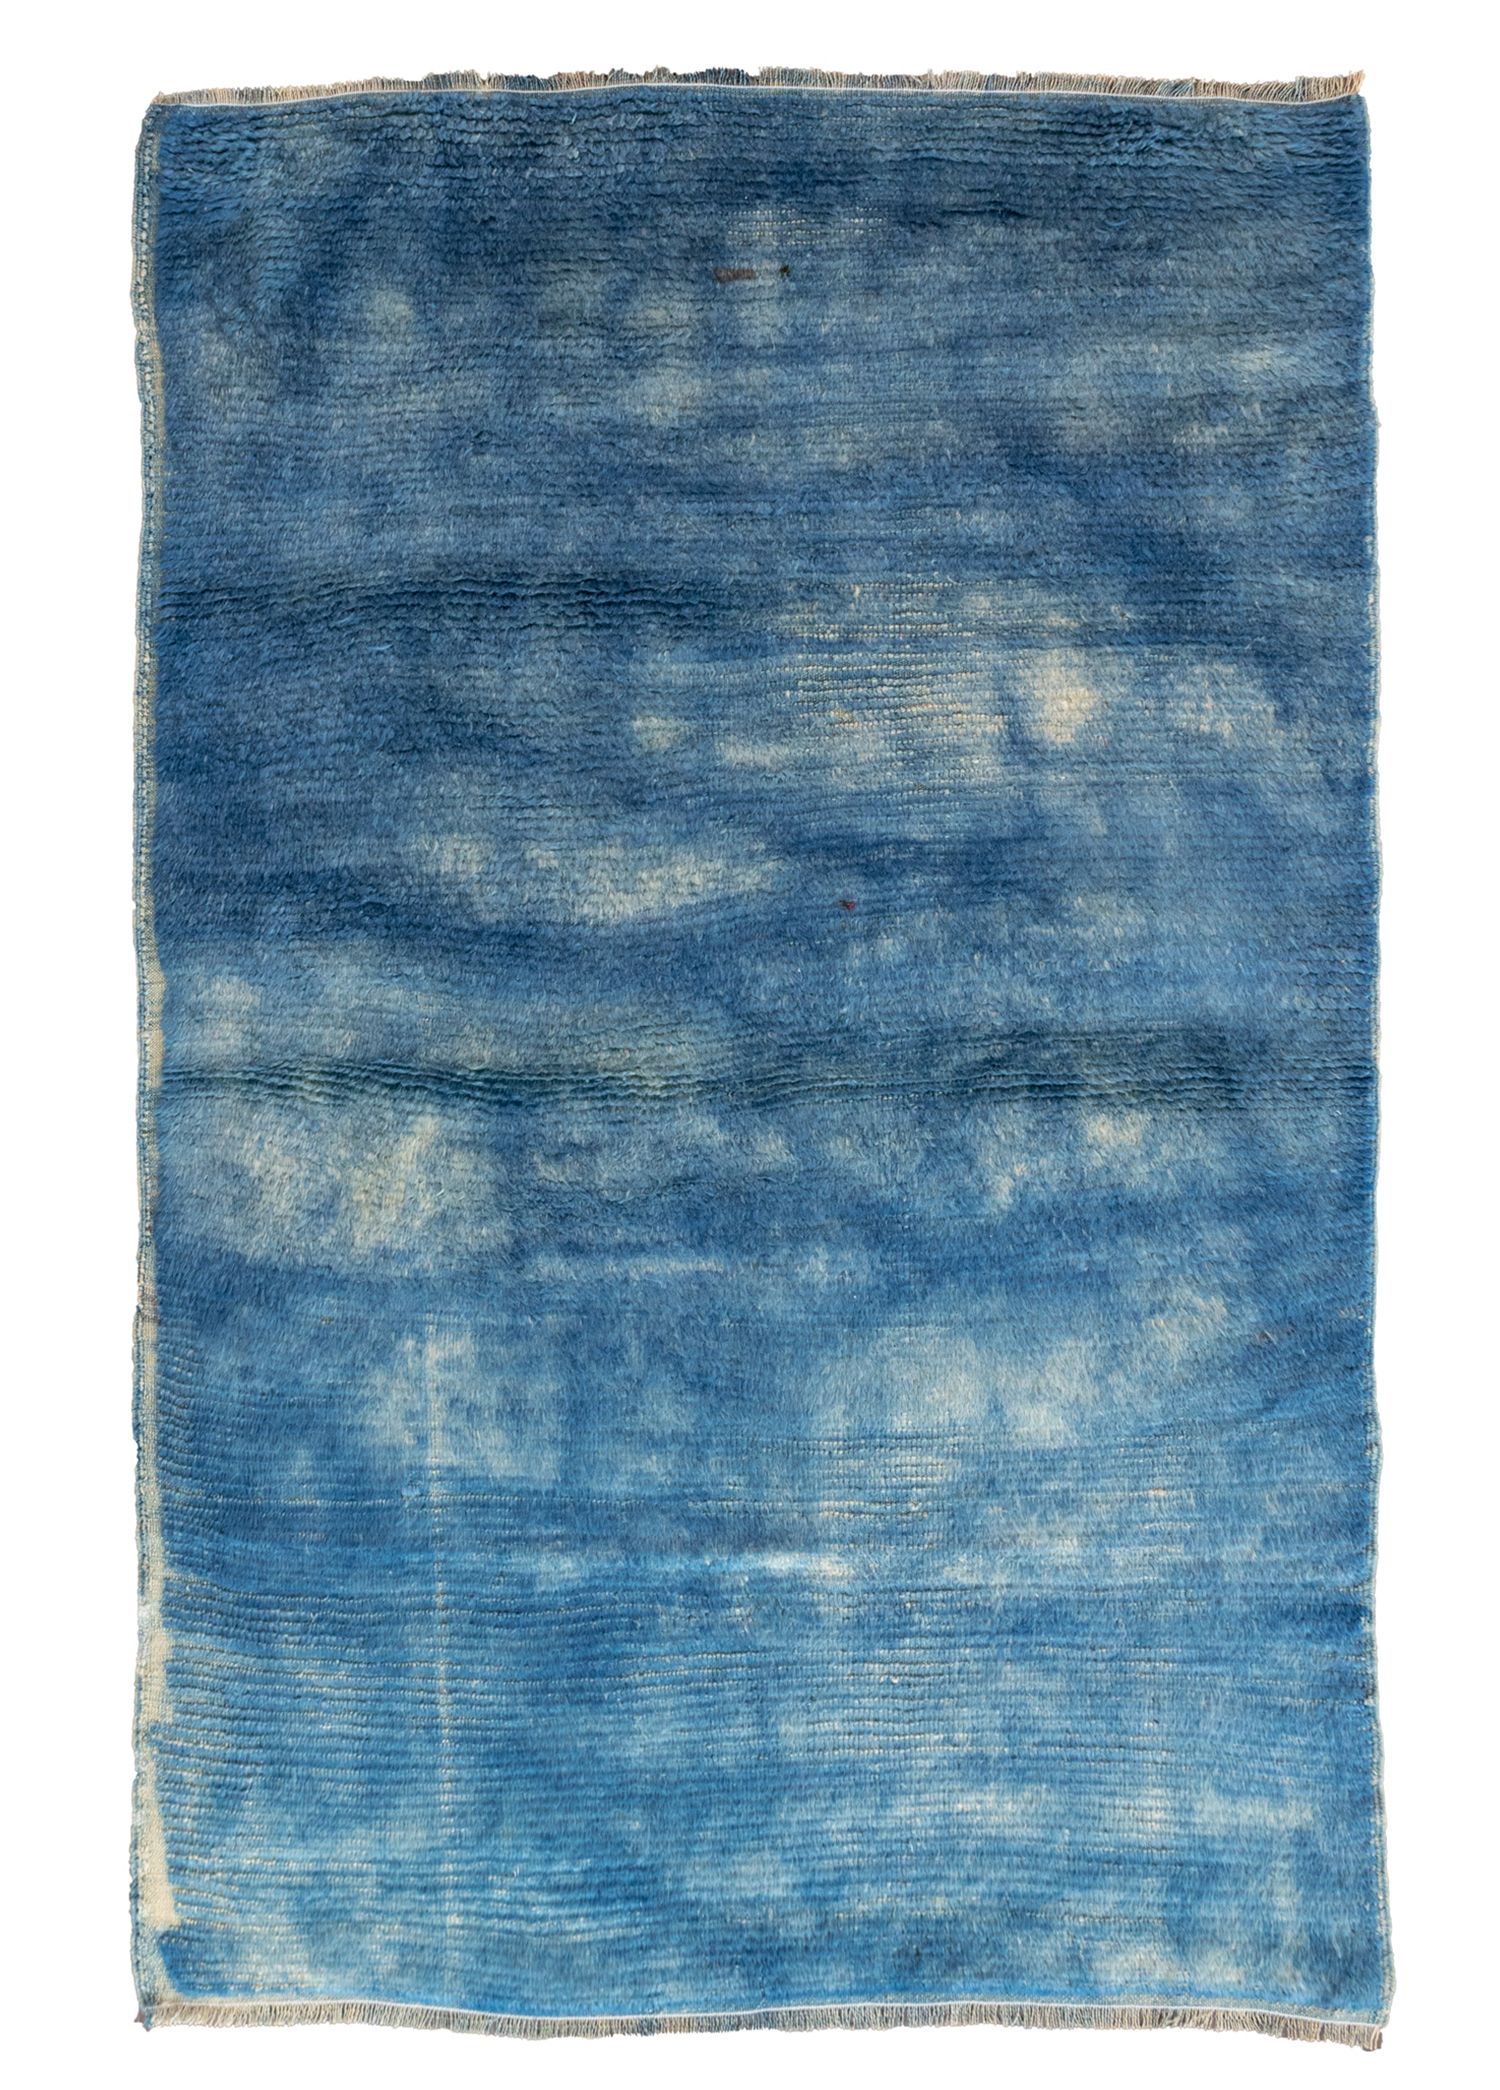 Bluish Mavi Abrajlı El Dokuma Tülü Halı 128x198 cm